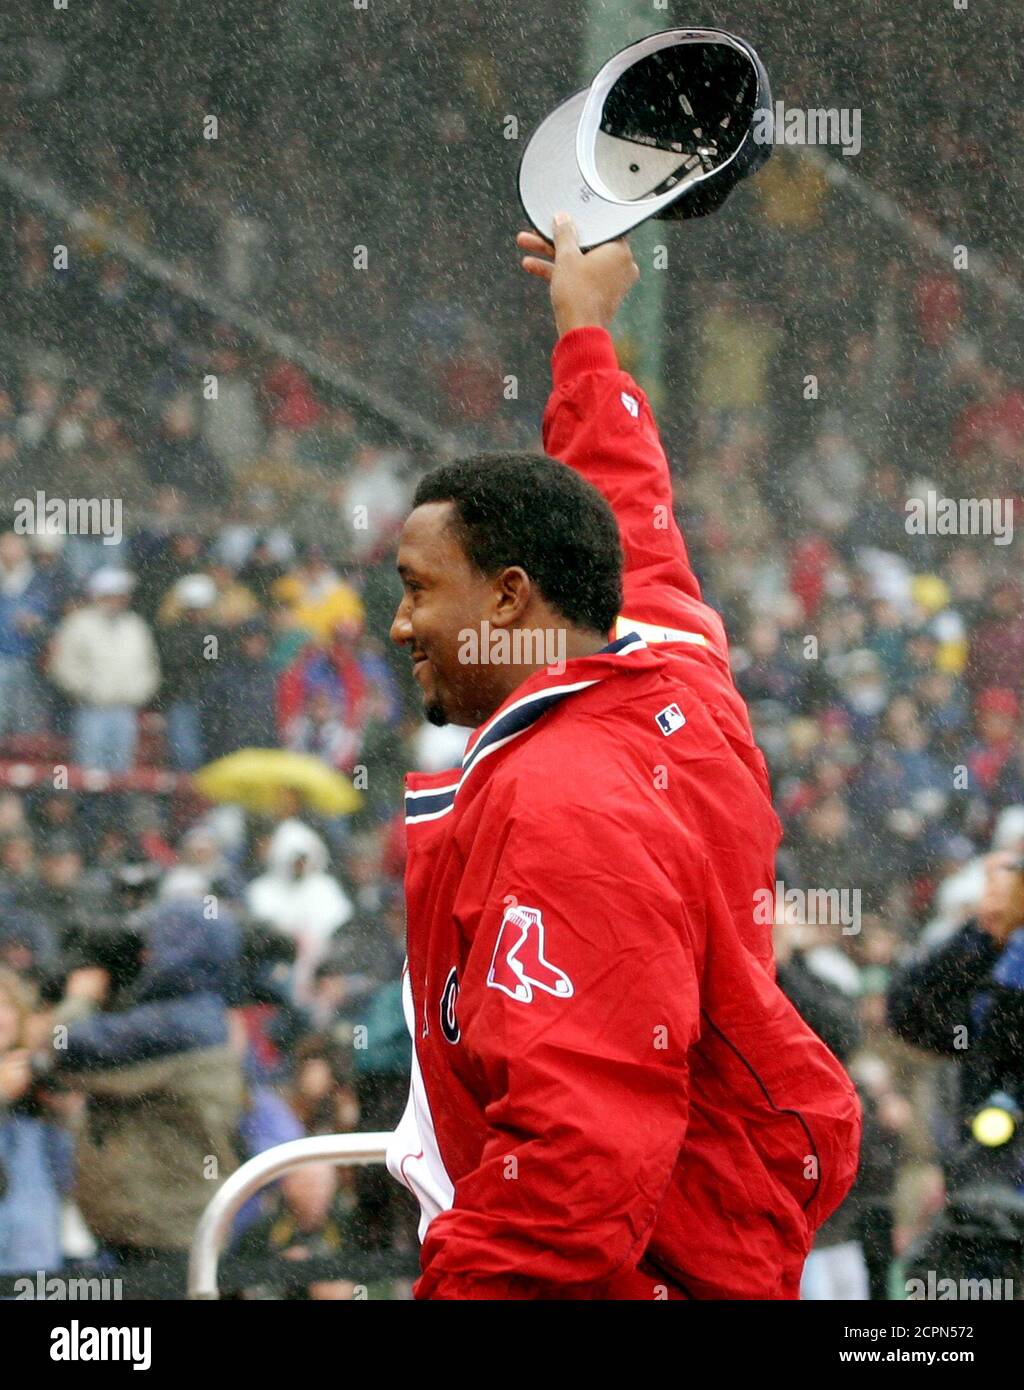 Pedro Marinez, le pichet trois fois lauréat du prix Cy Young, s'adresse aux fans des Red Sox de Boston à Fenway Park, alors qu'il se tient dans la pluie battante lors des cérémonies qui ont précédé le départ prévu du Red Sox le 11 avril 2003 à Boston. Le jeu entre le Boston Red Sox et les Baltimore Orioles a été arrêté et retardé jusqu'à un autre jour en raison de la forte pluie. REUTERS/Jim Bourg JRB Banque D'Images